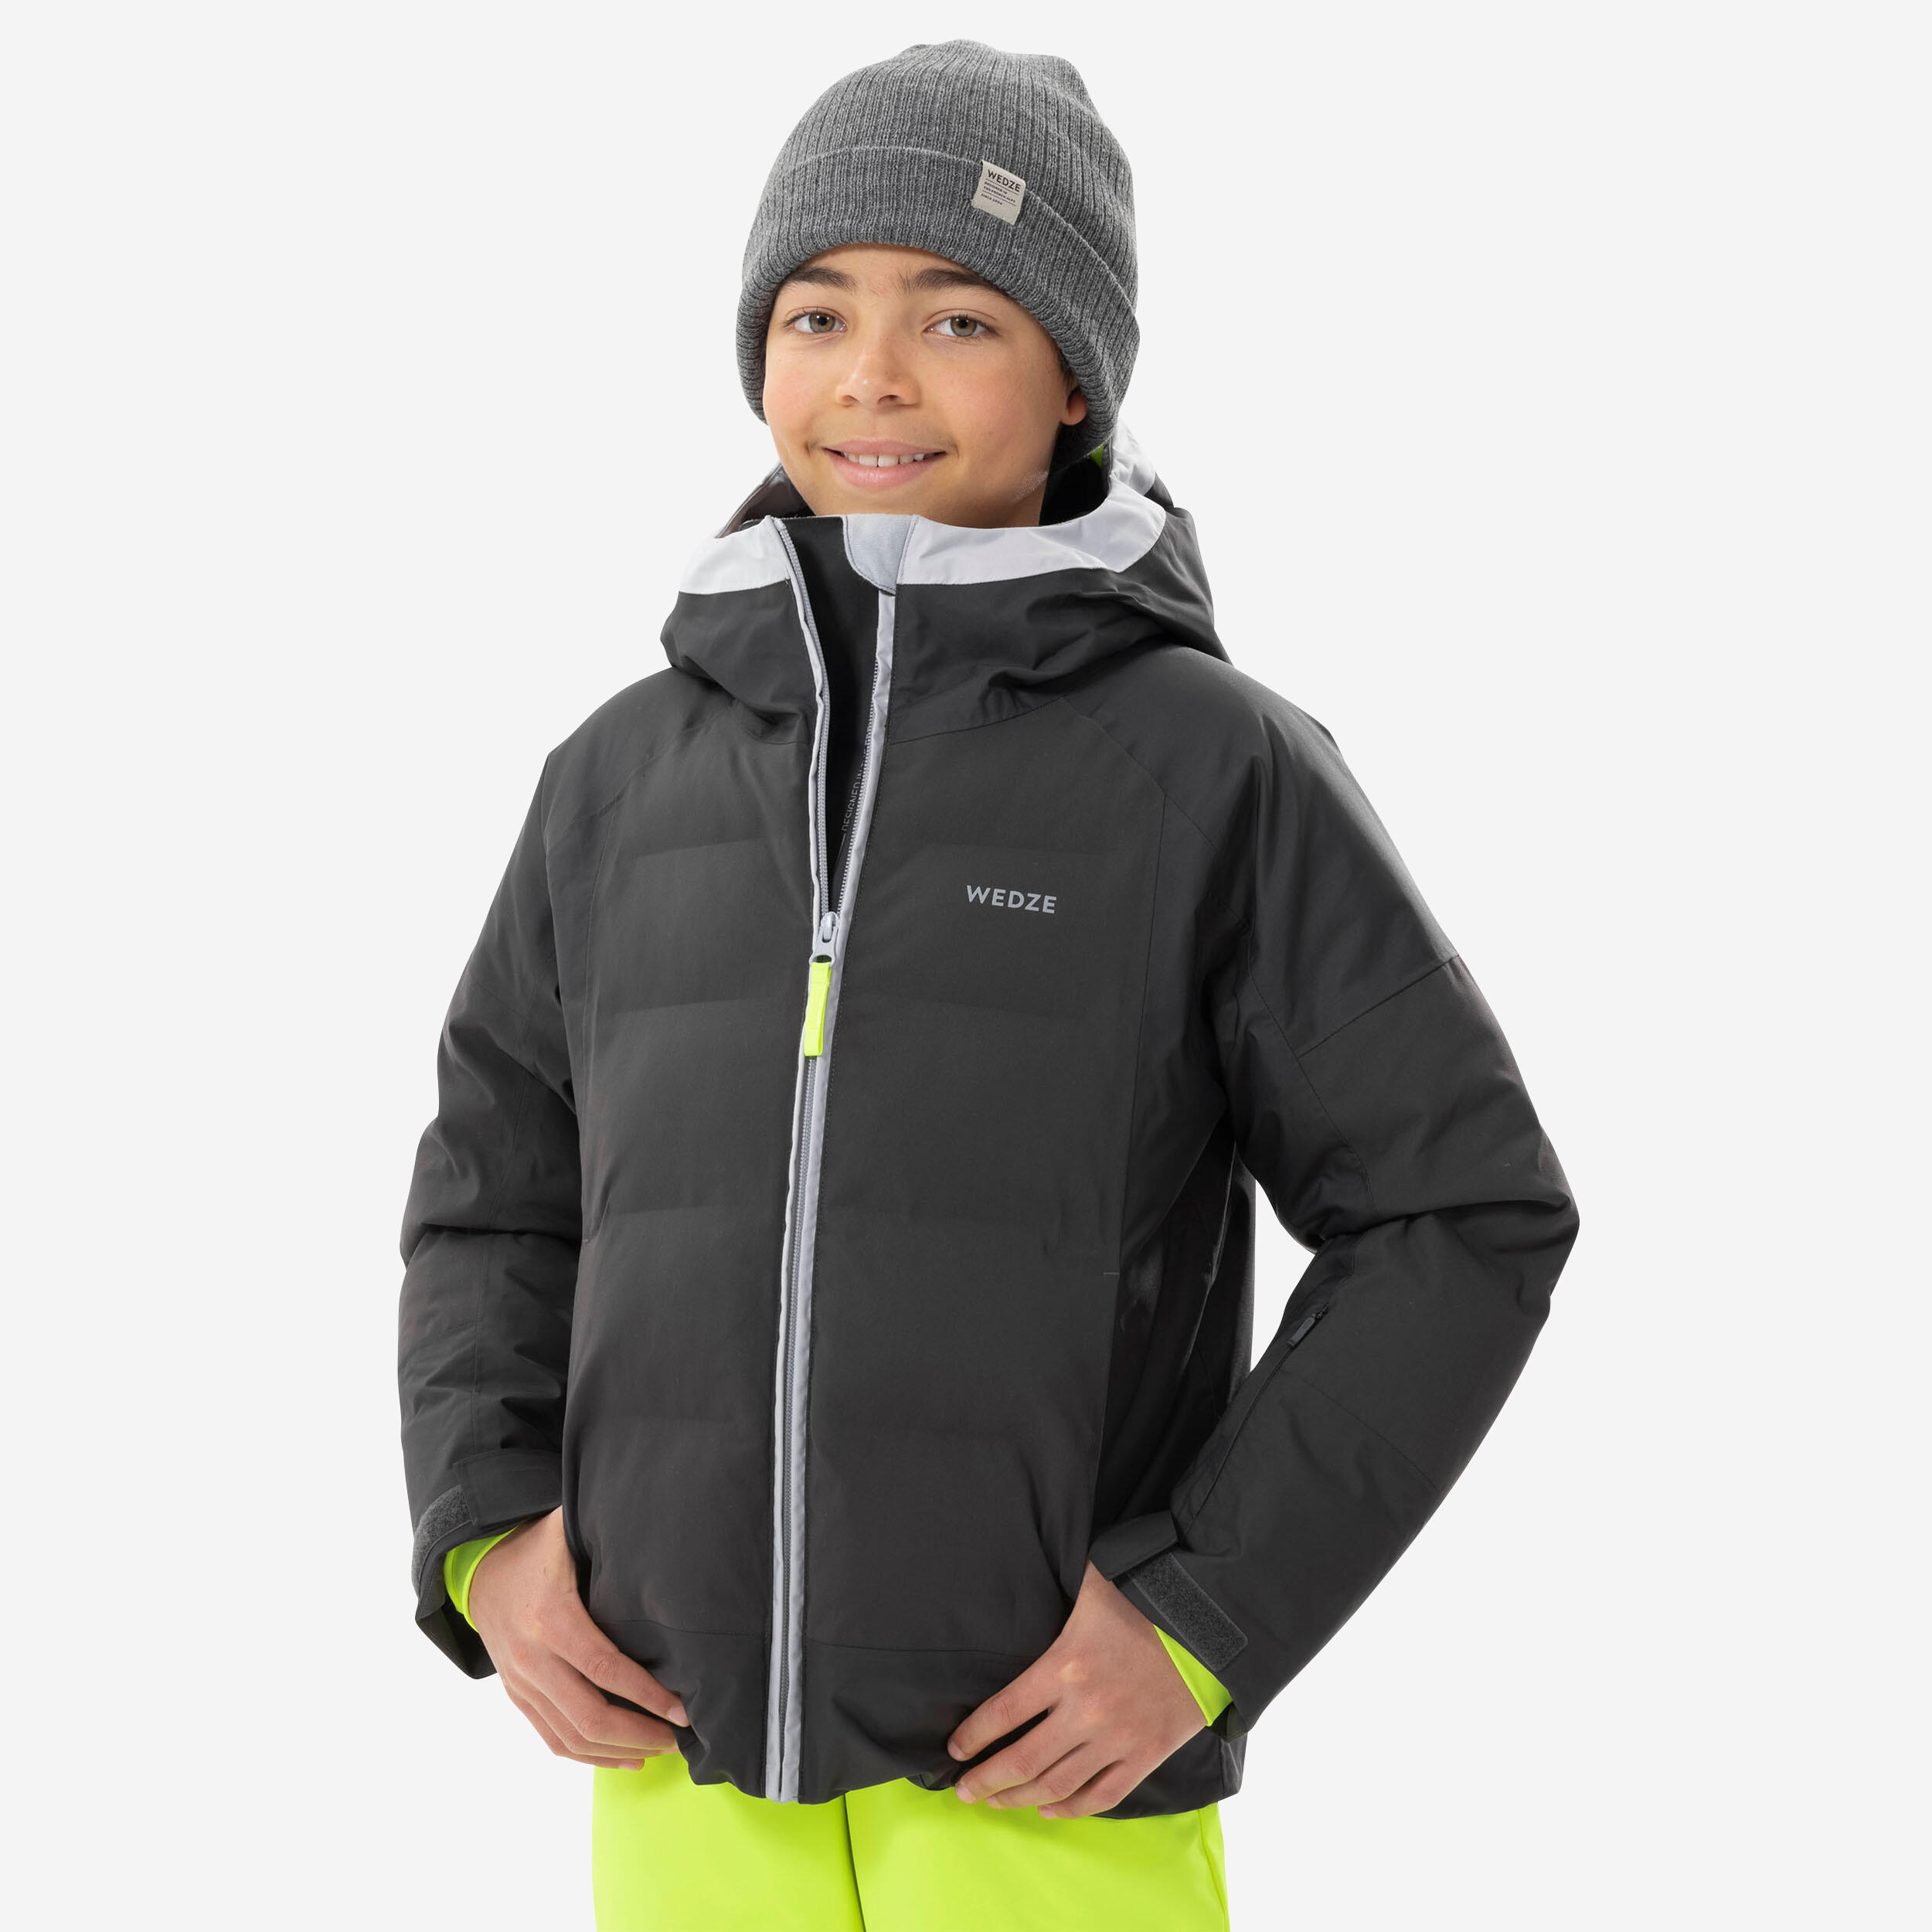 doudoune de ski enfant tres chaude et impermeable 580 warm grise - wedze